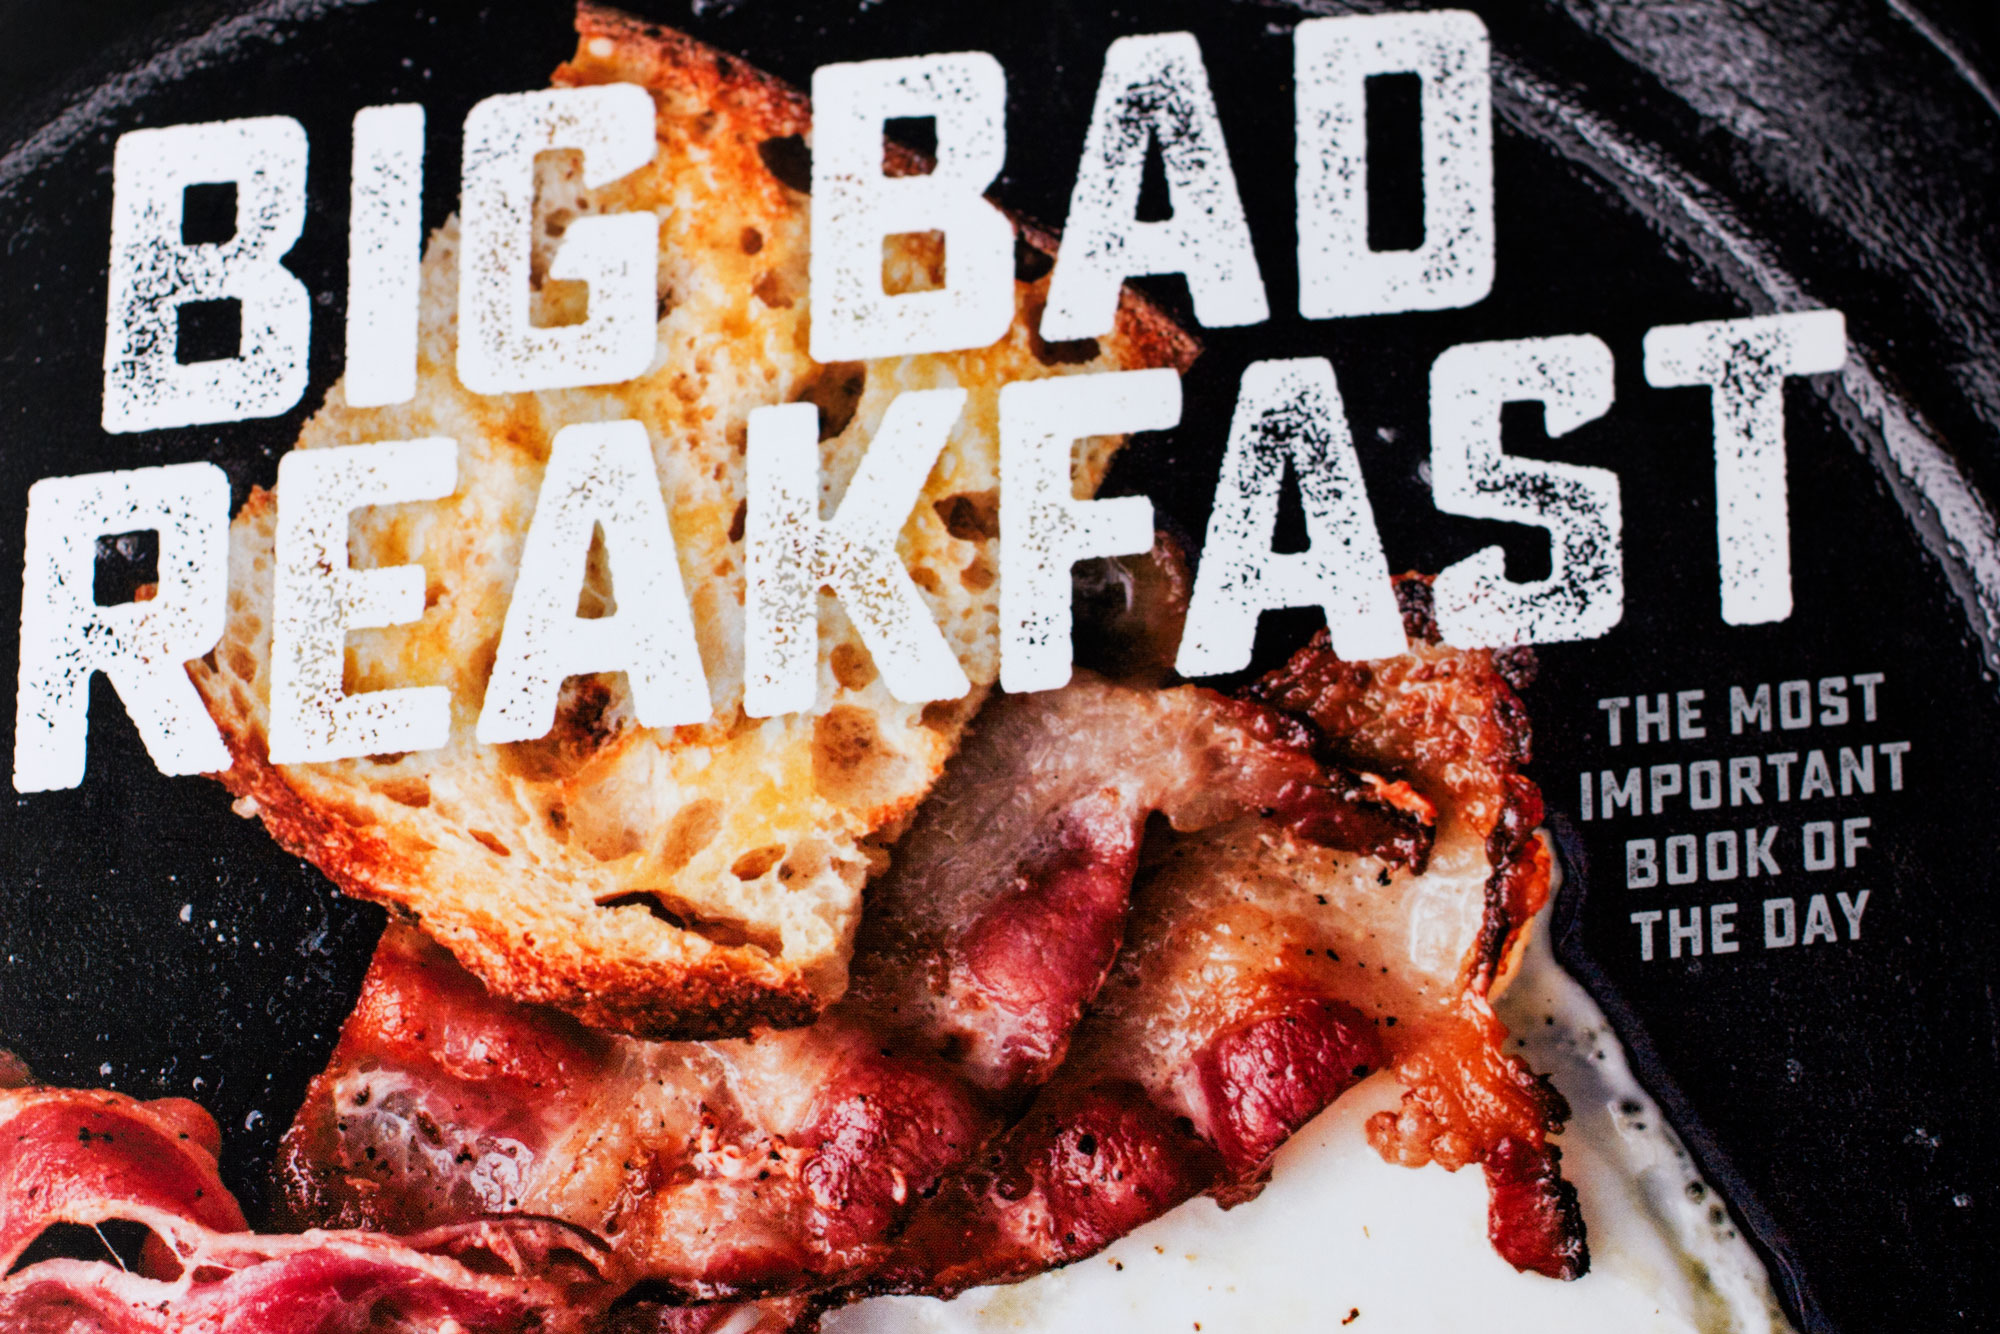 Big Bad Breakfast